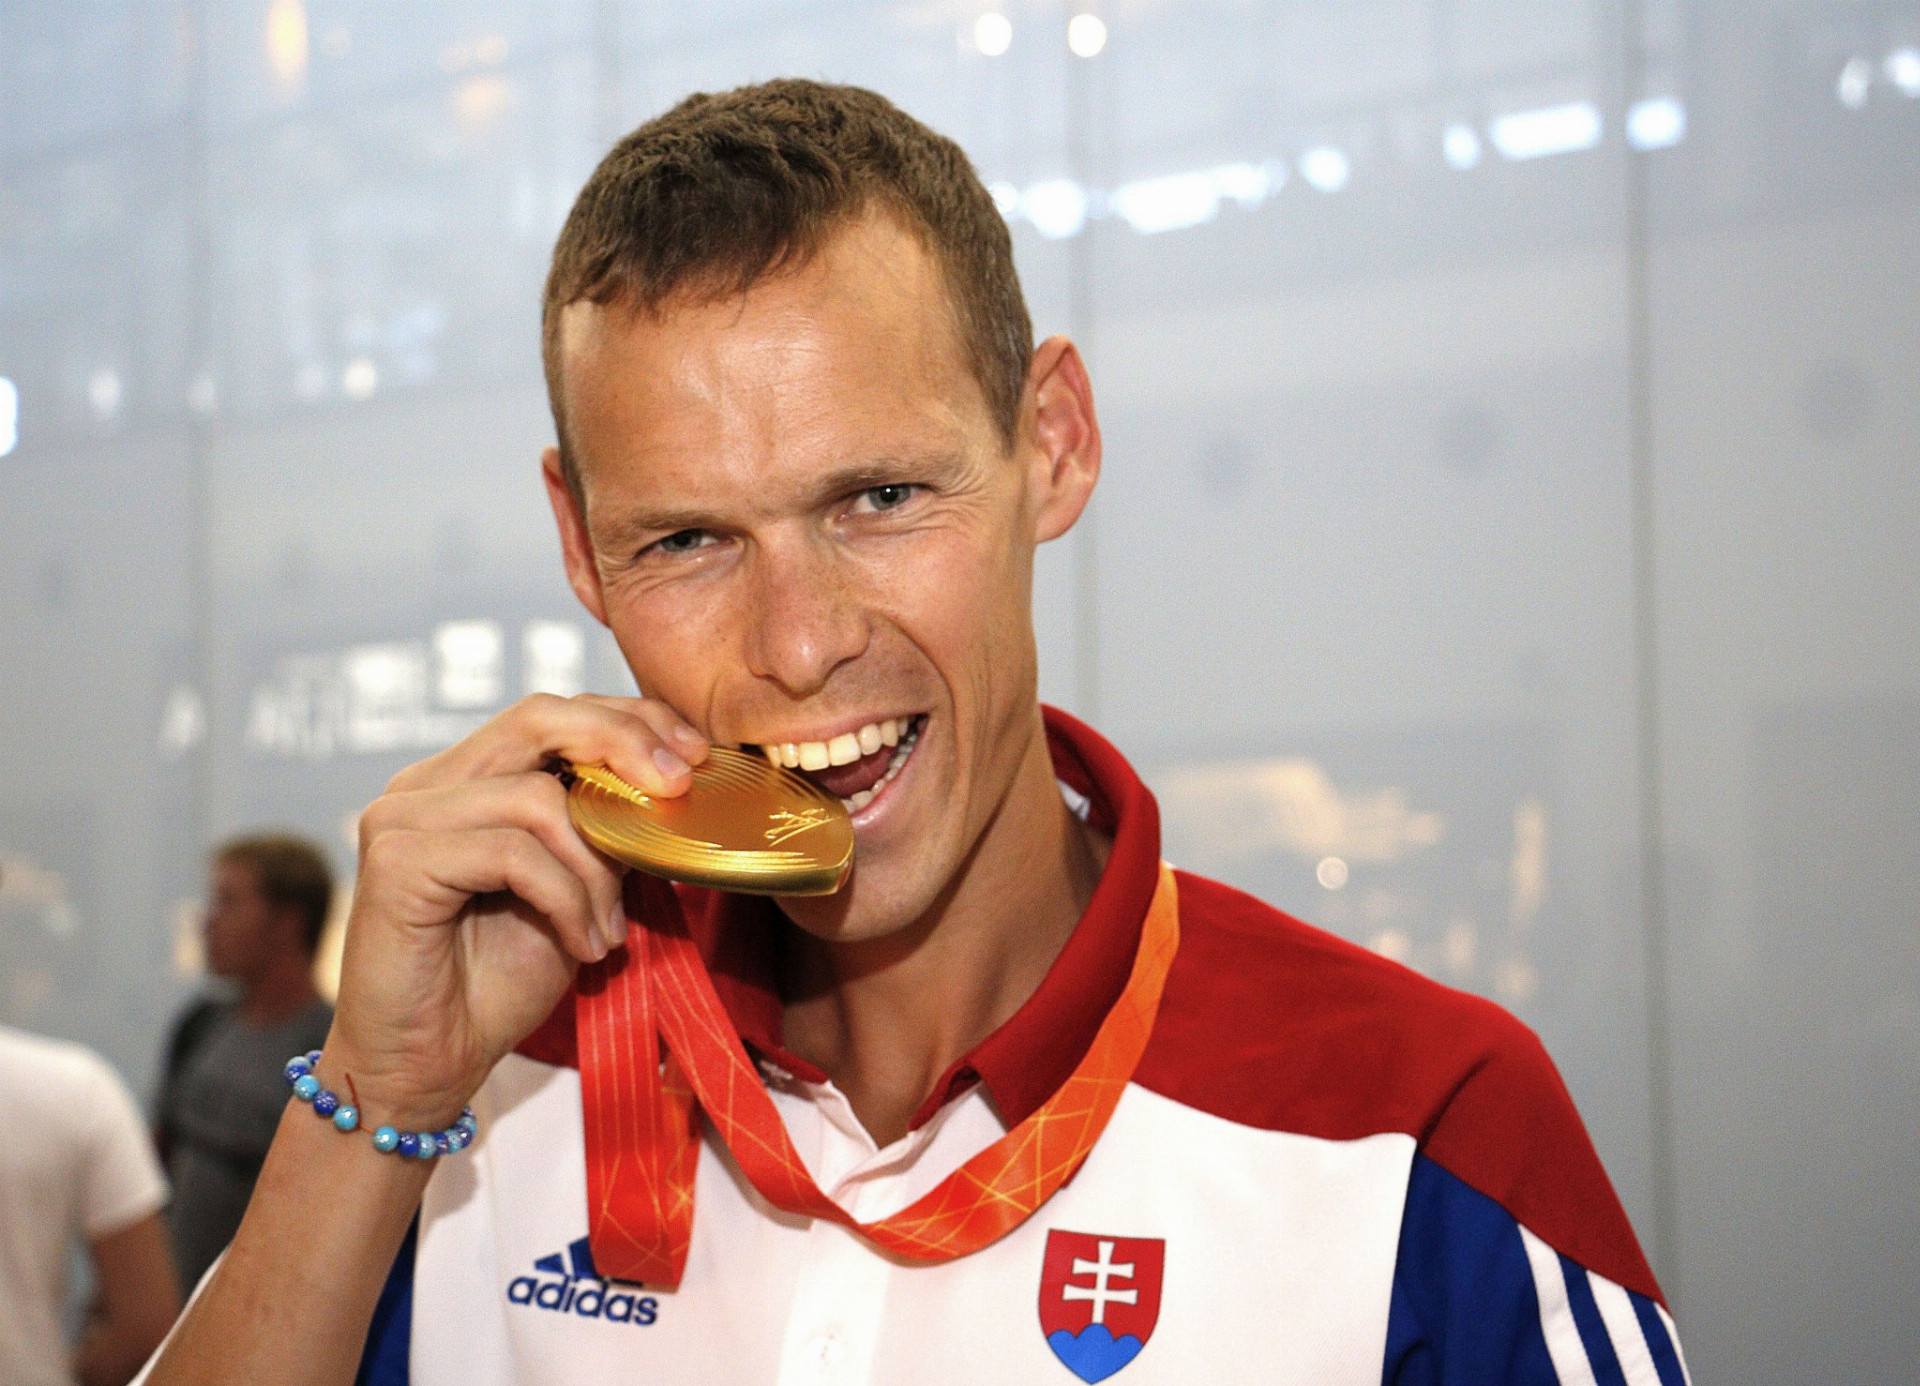 Najväčšou nádejou Slovenska na zisk medaily na tohtoročnej olympiáde v Riu je
vlaňajší majster sveta v chôdzi Matej Tóth.